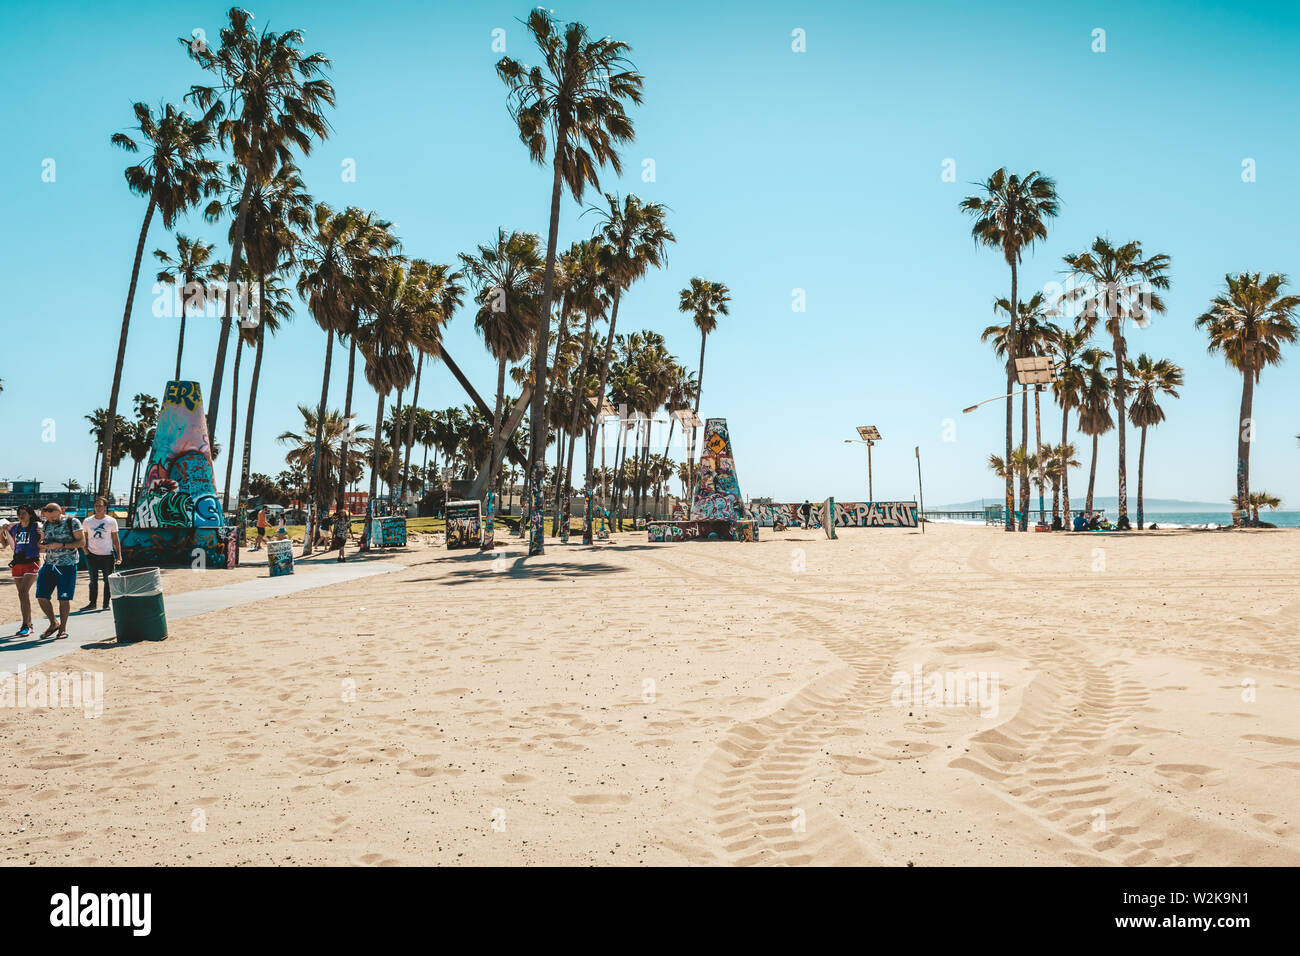 La spiaggia di Venice, California, Stati Uniti d'America - 10 Aprile 2019: sabbia e palme presso la spiaggia di Venezia in una giornata di sole in Los Angeles, California, Stati Uniti d'America Foto Stock